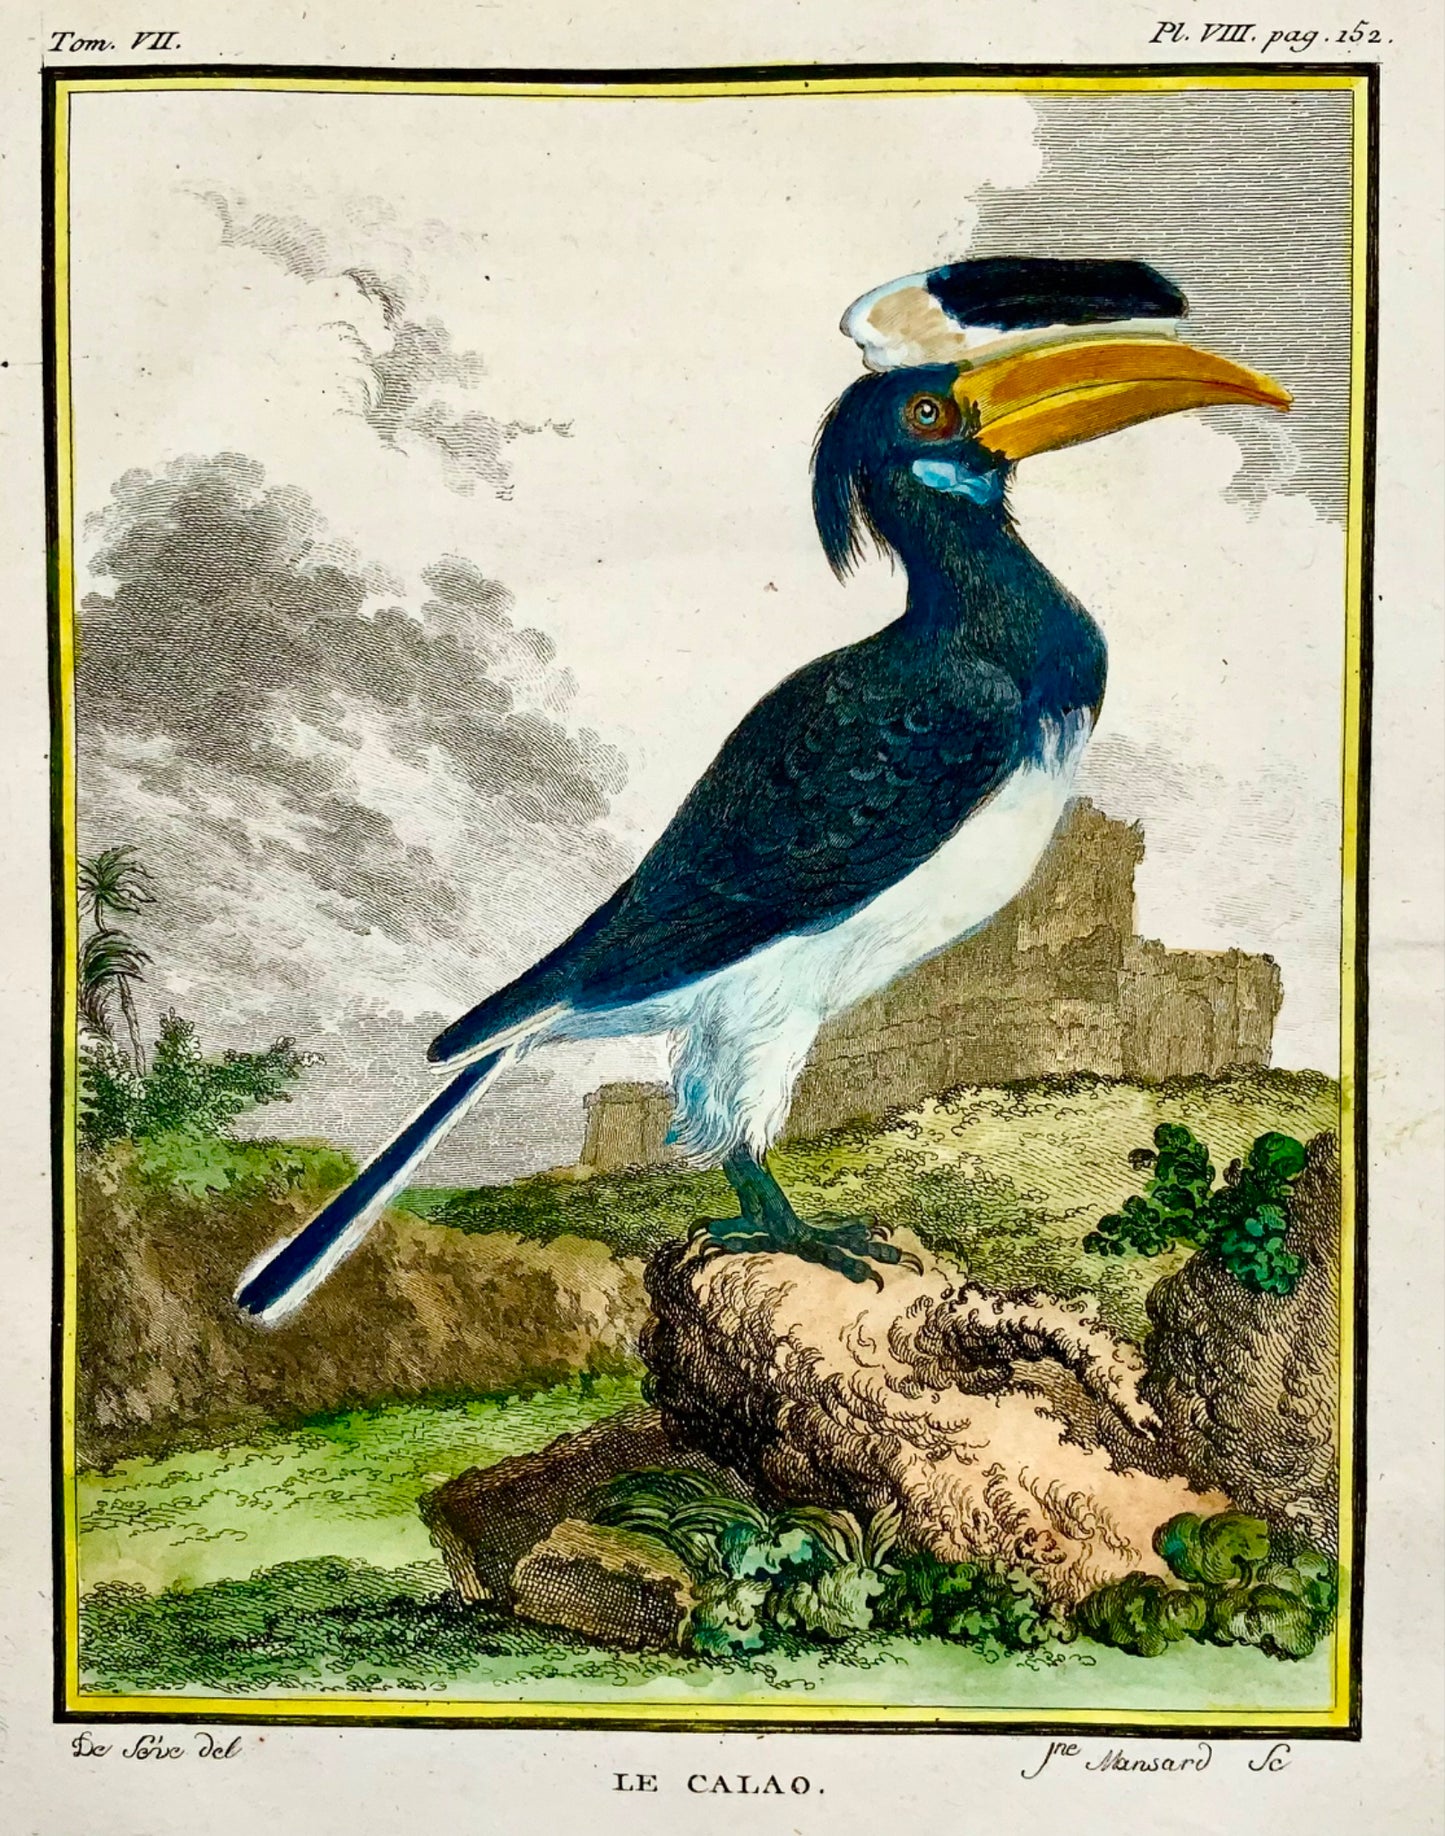 1775 Calao, Calao, gravure sur cuivre colorée à la main, in-quarto fin, Ornithologie